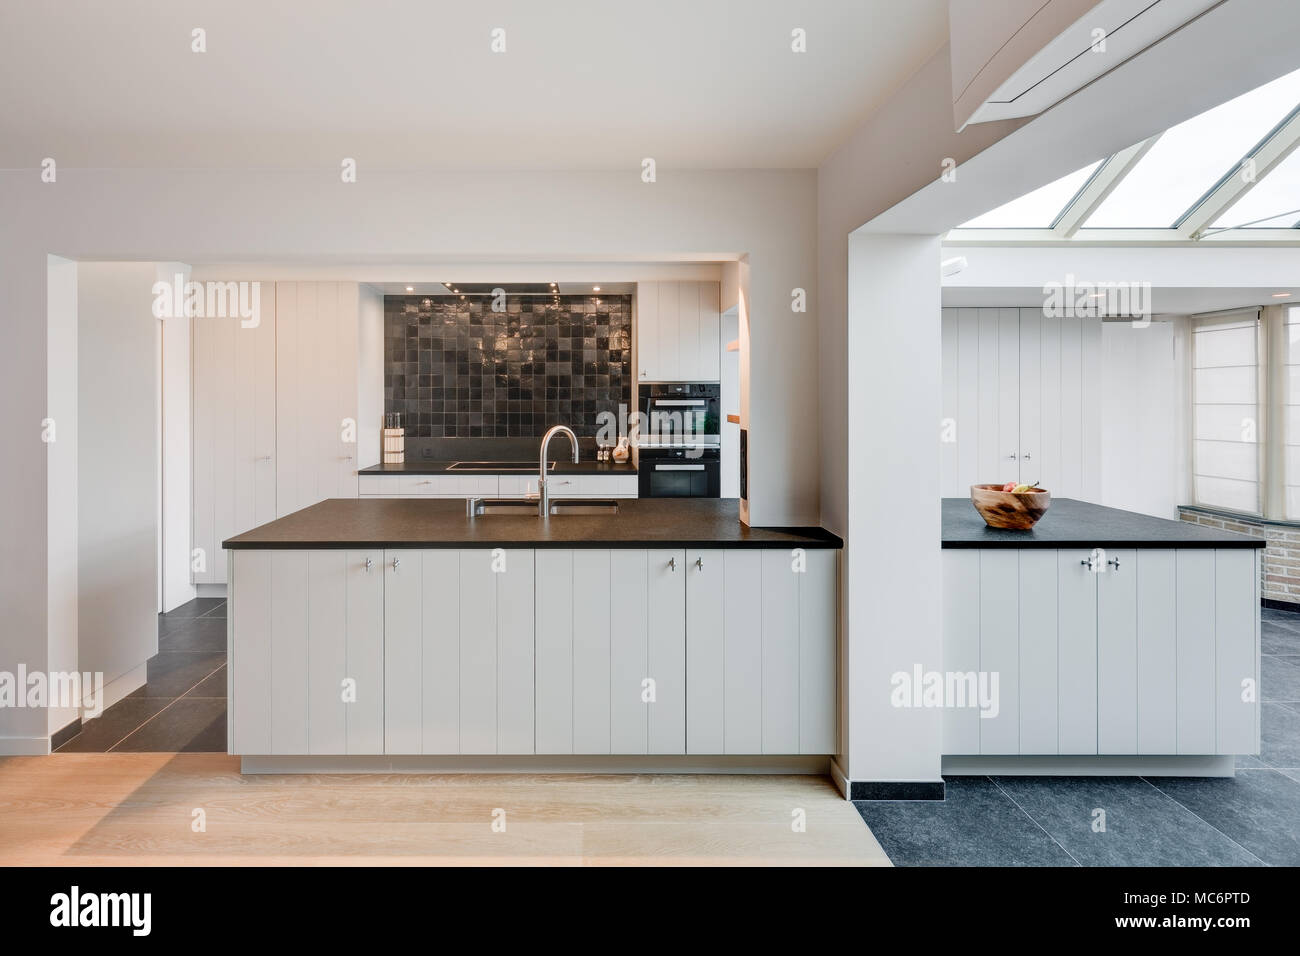 Contemporary domestic kitchen Stock Photo